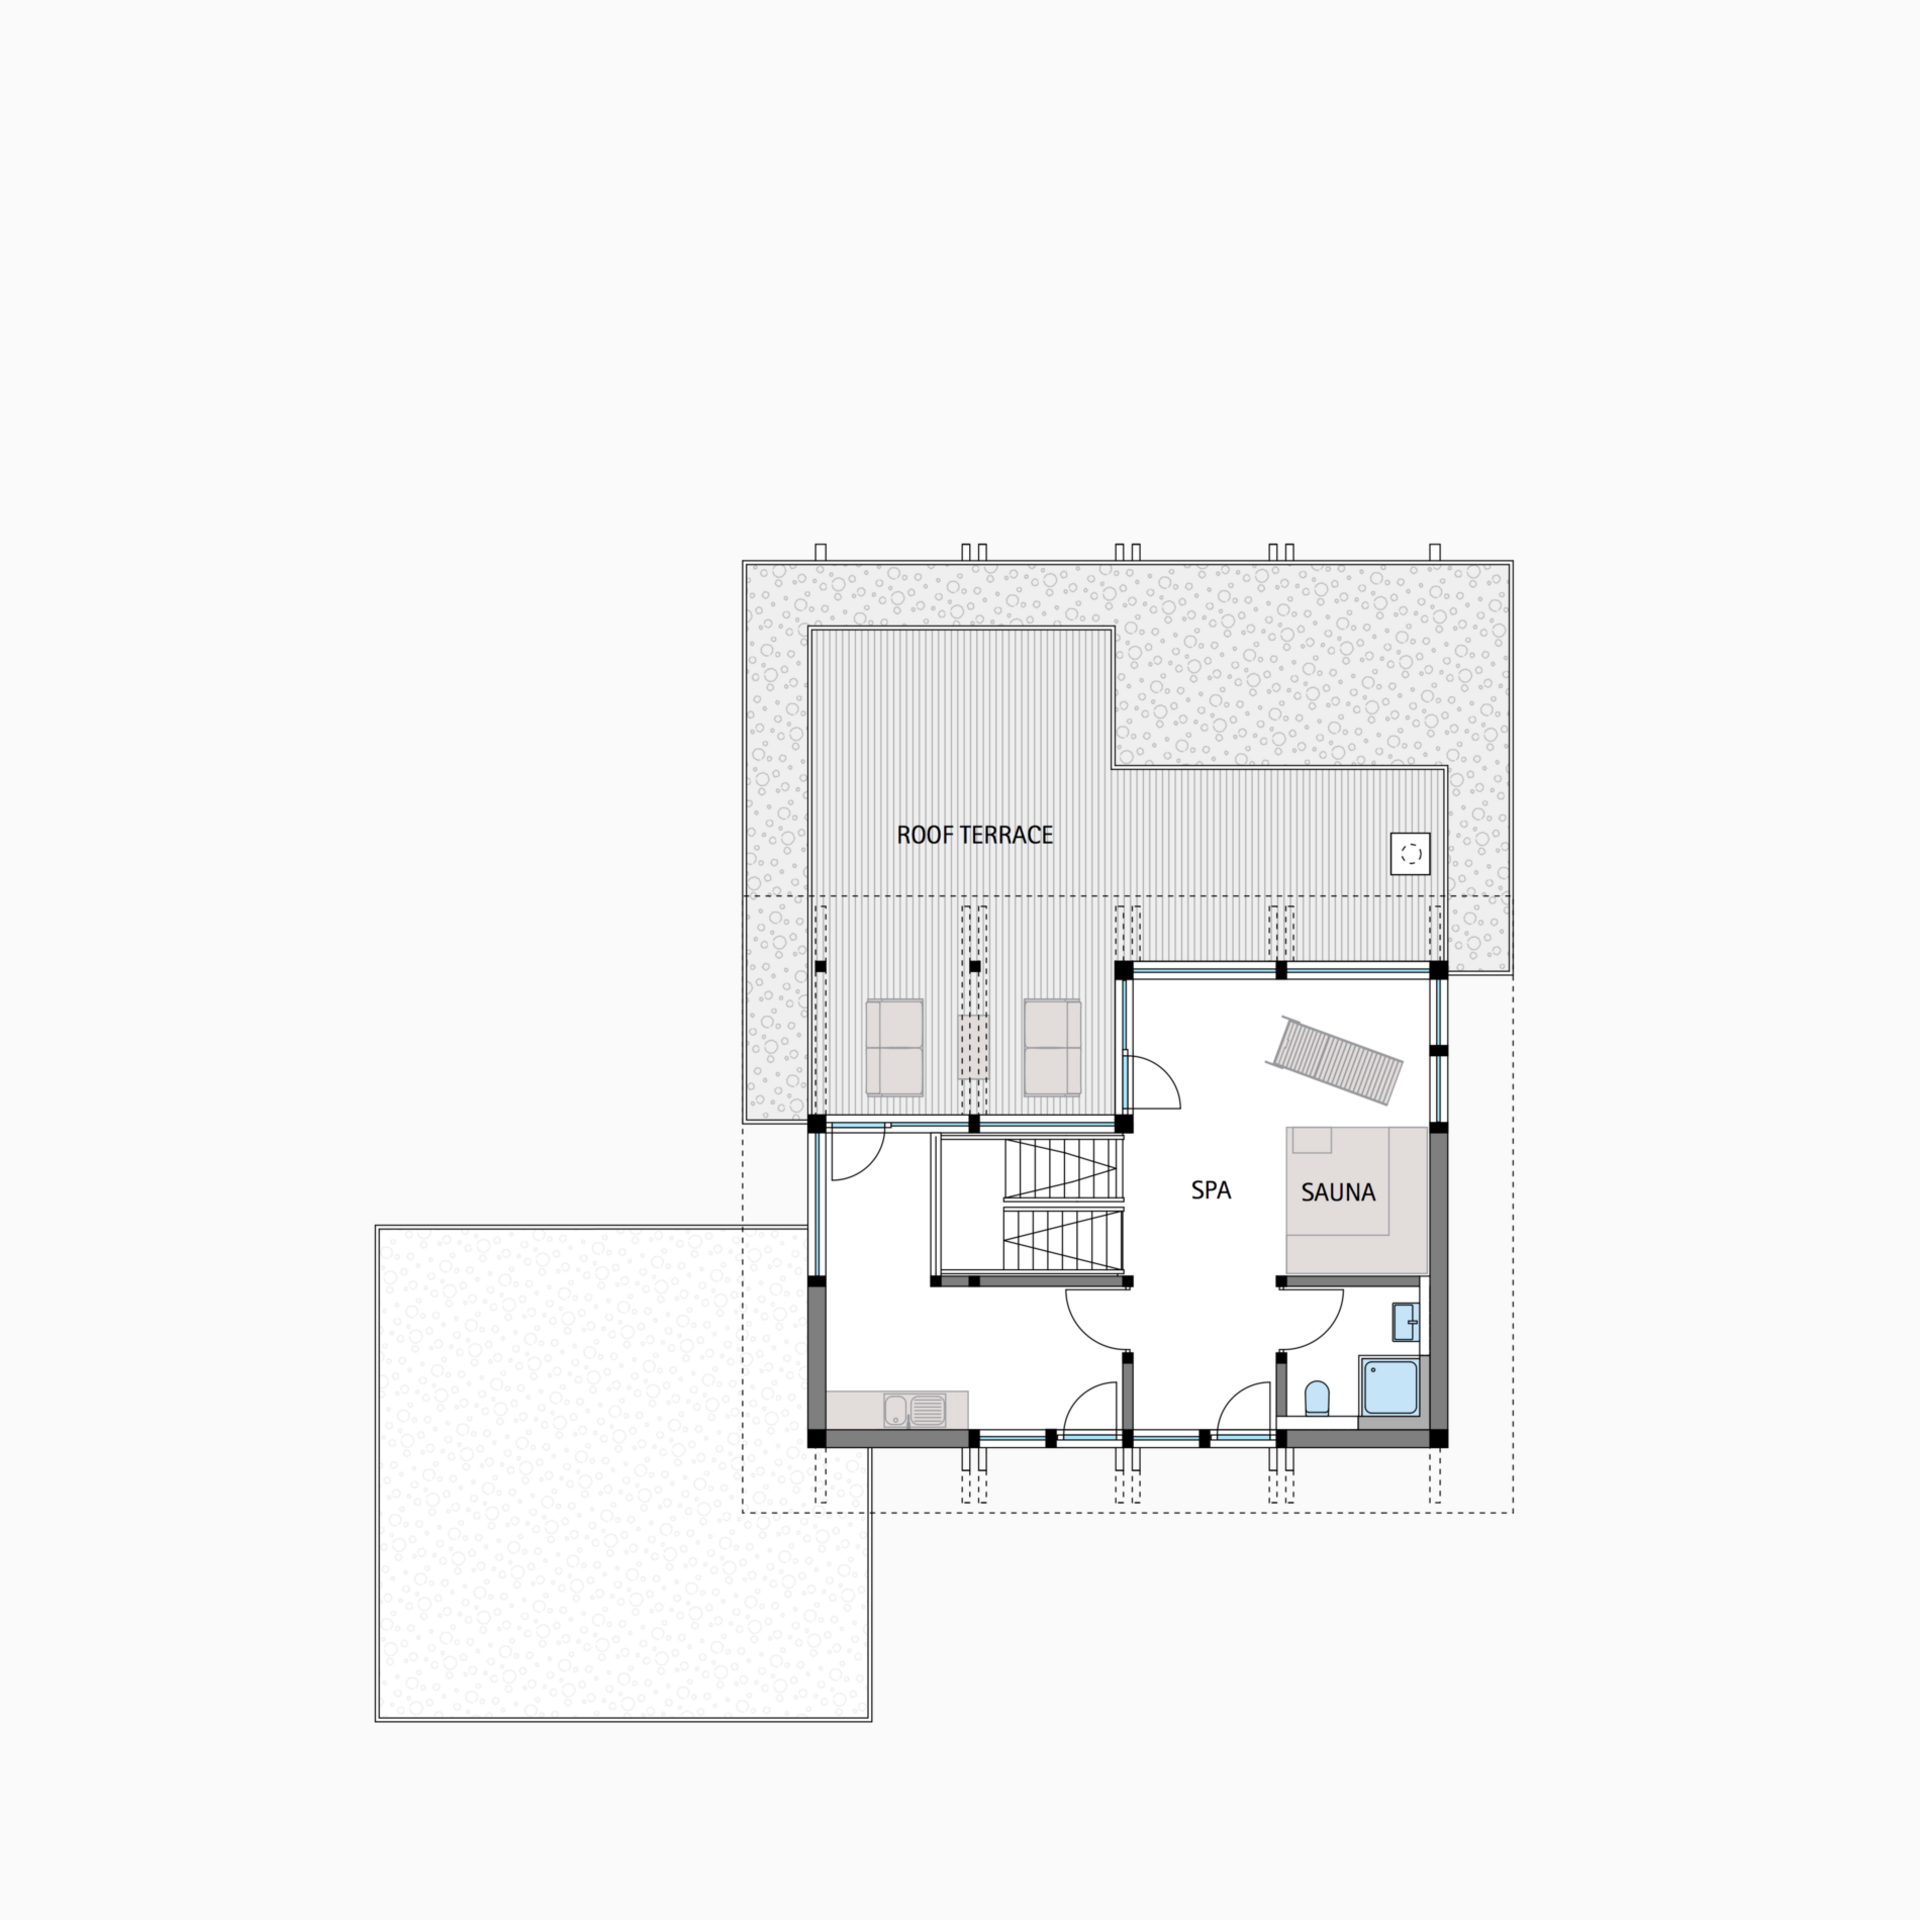 HUF house floor plan second floor flat roof